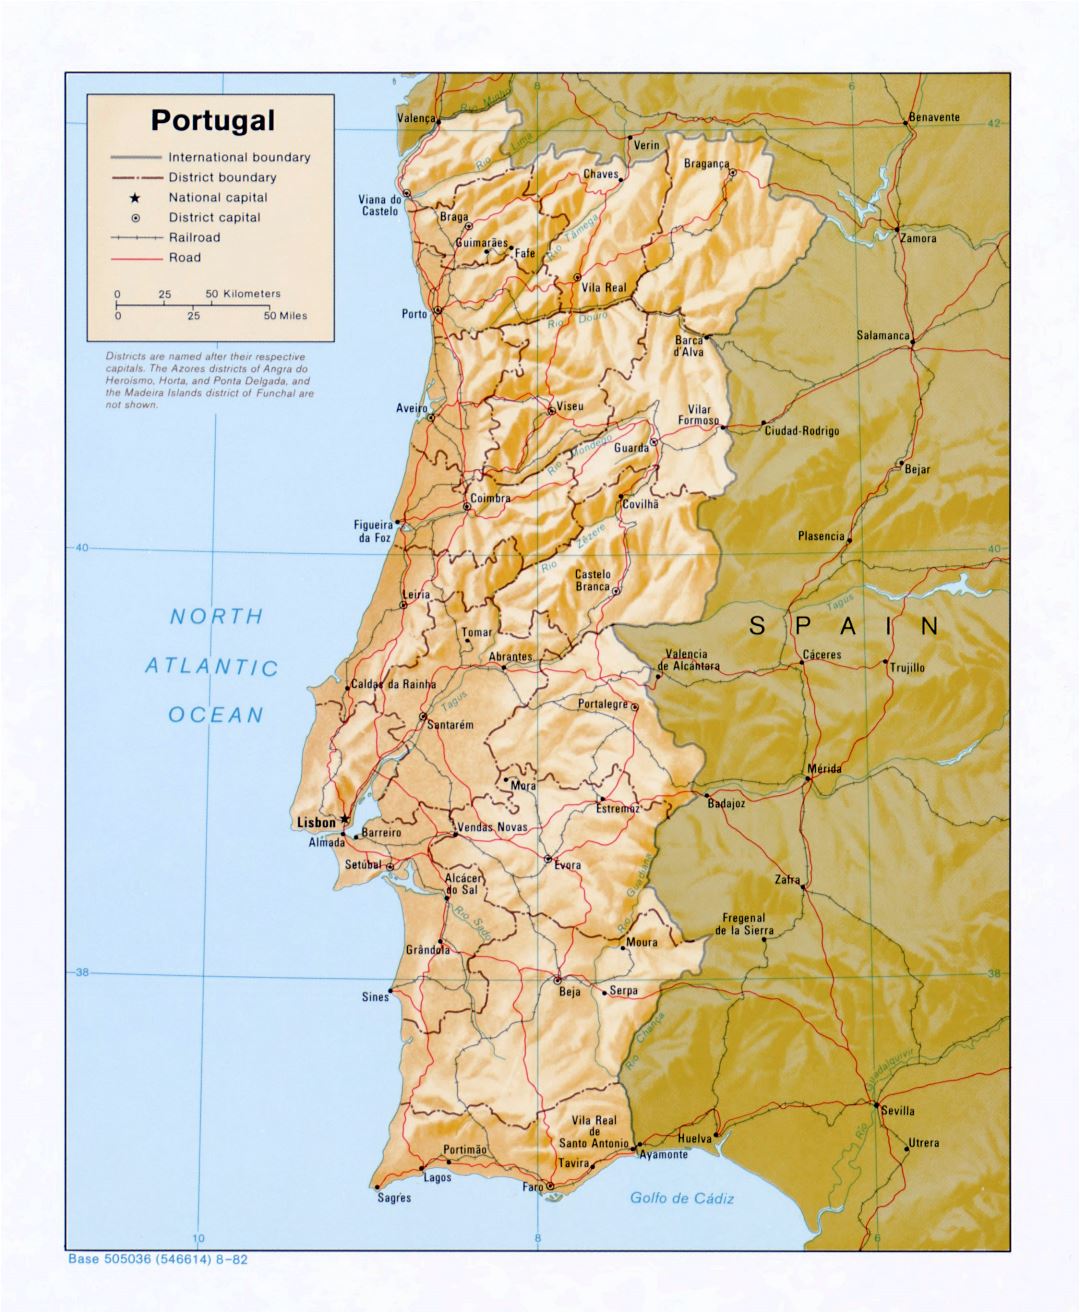 Grande detallado mapa política y administrativa de Portugal con alivio, carreteras y principales ciudades - 1982